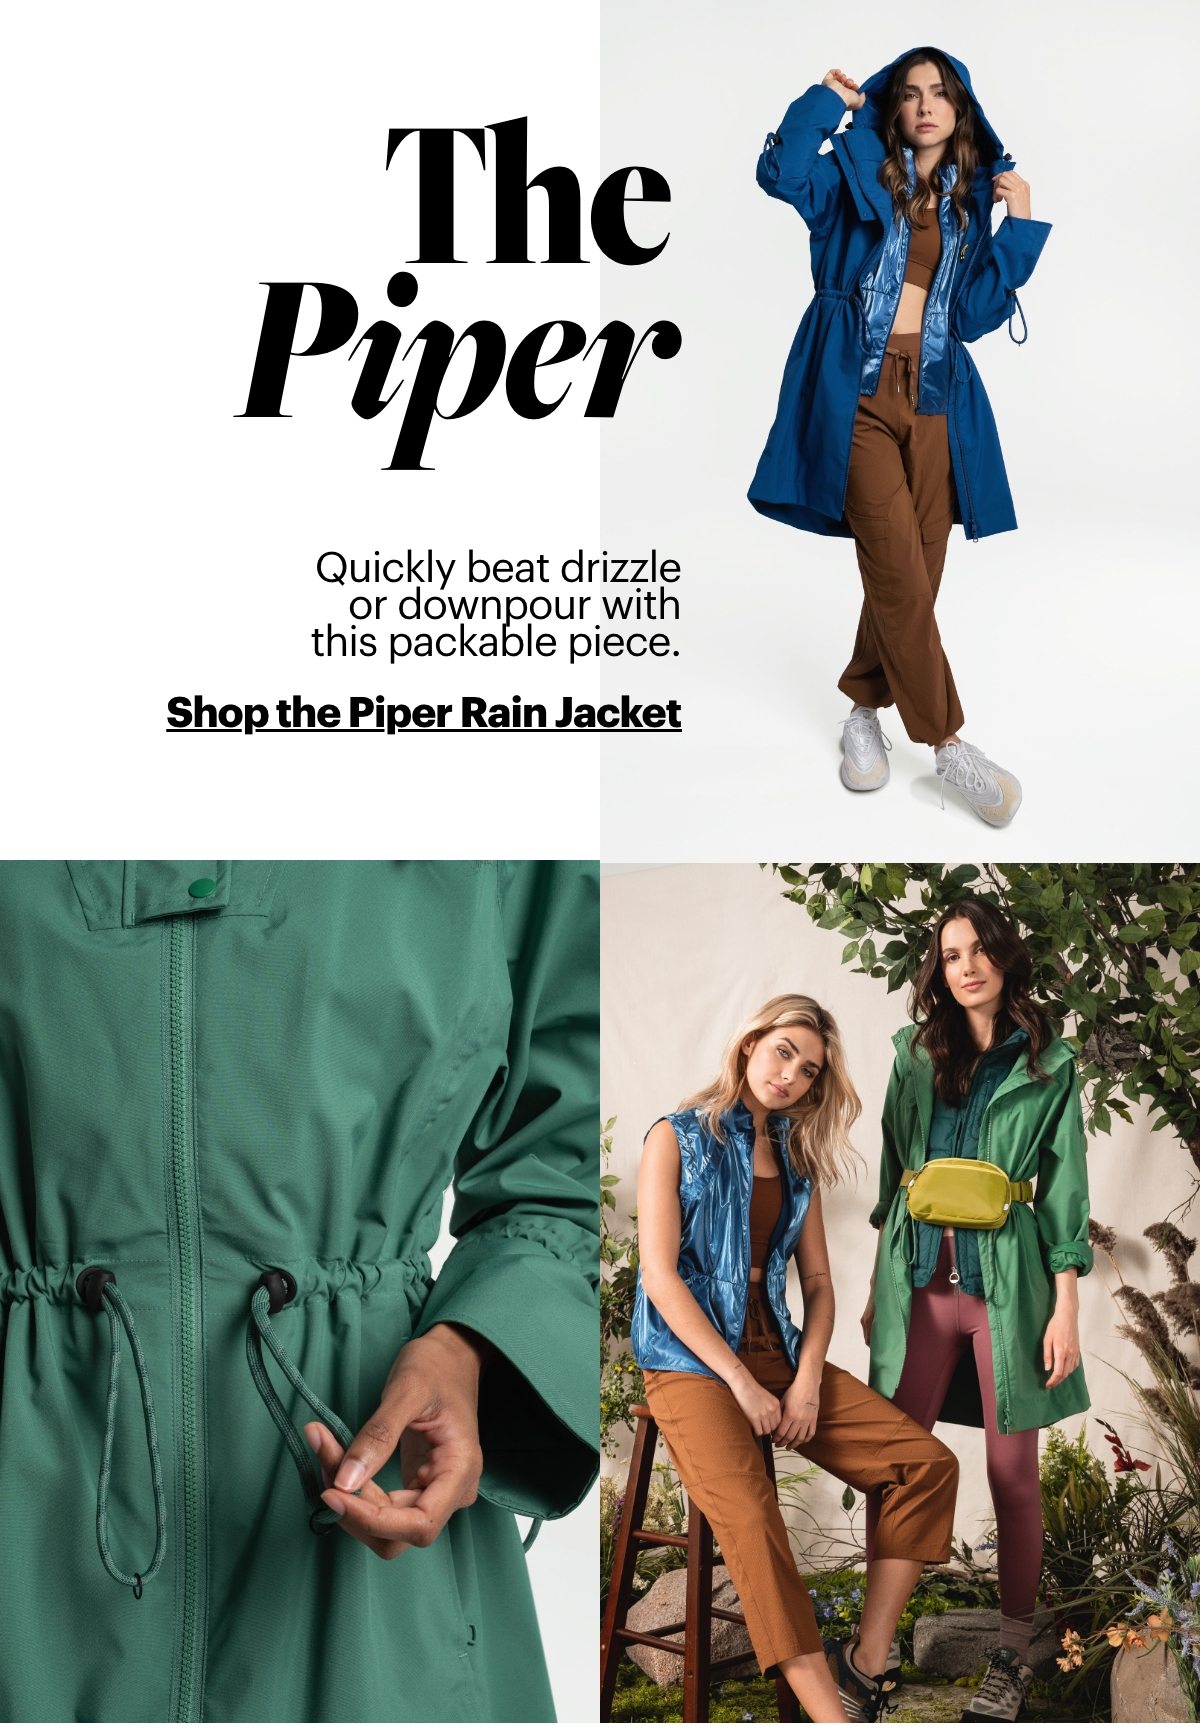 Shop the Piper Rain Jacket